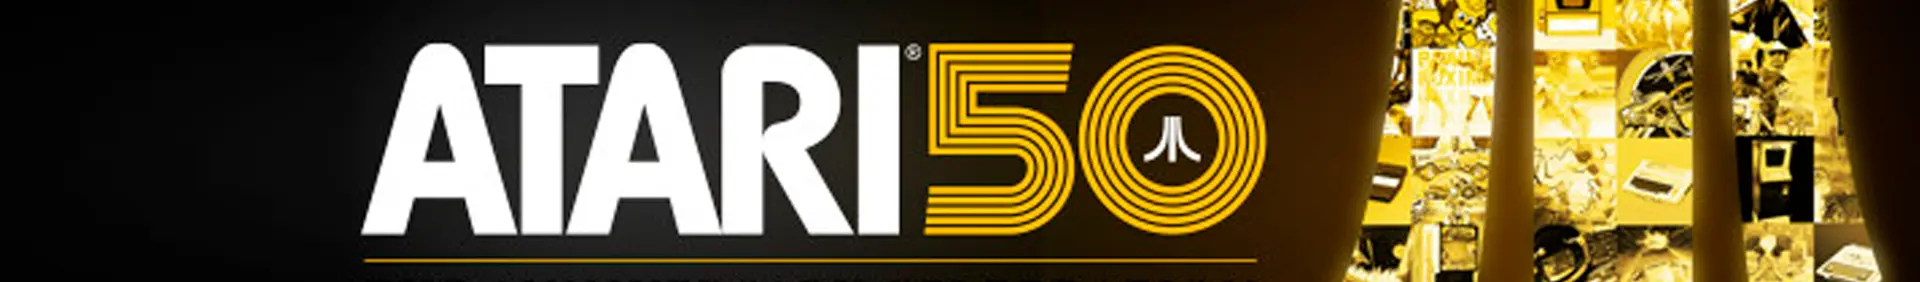 Atari 50: The Anniversary Celebration - Edición Expandida